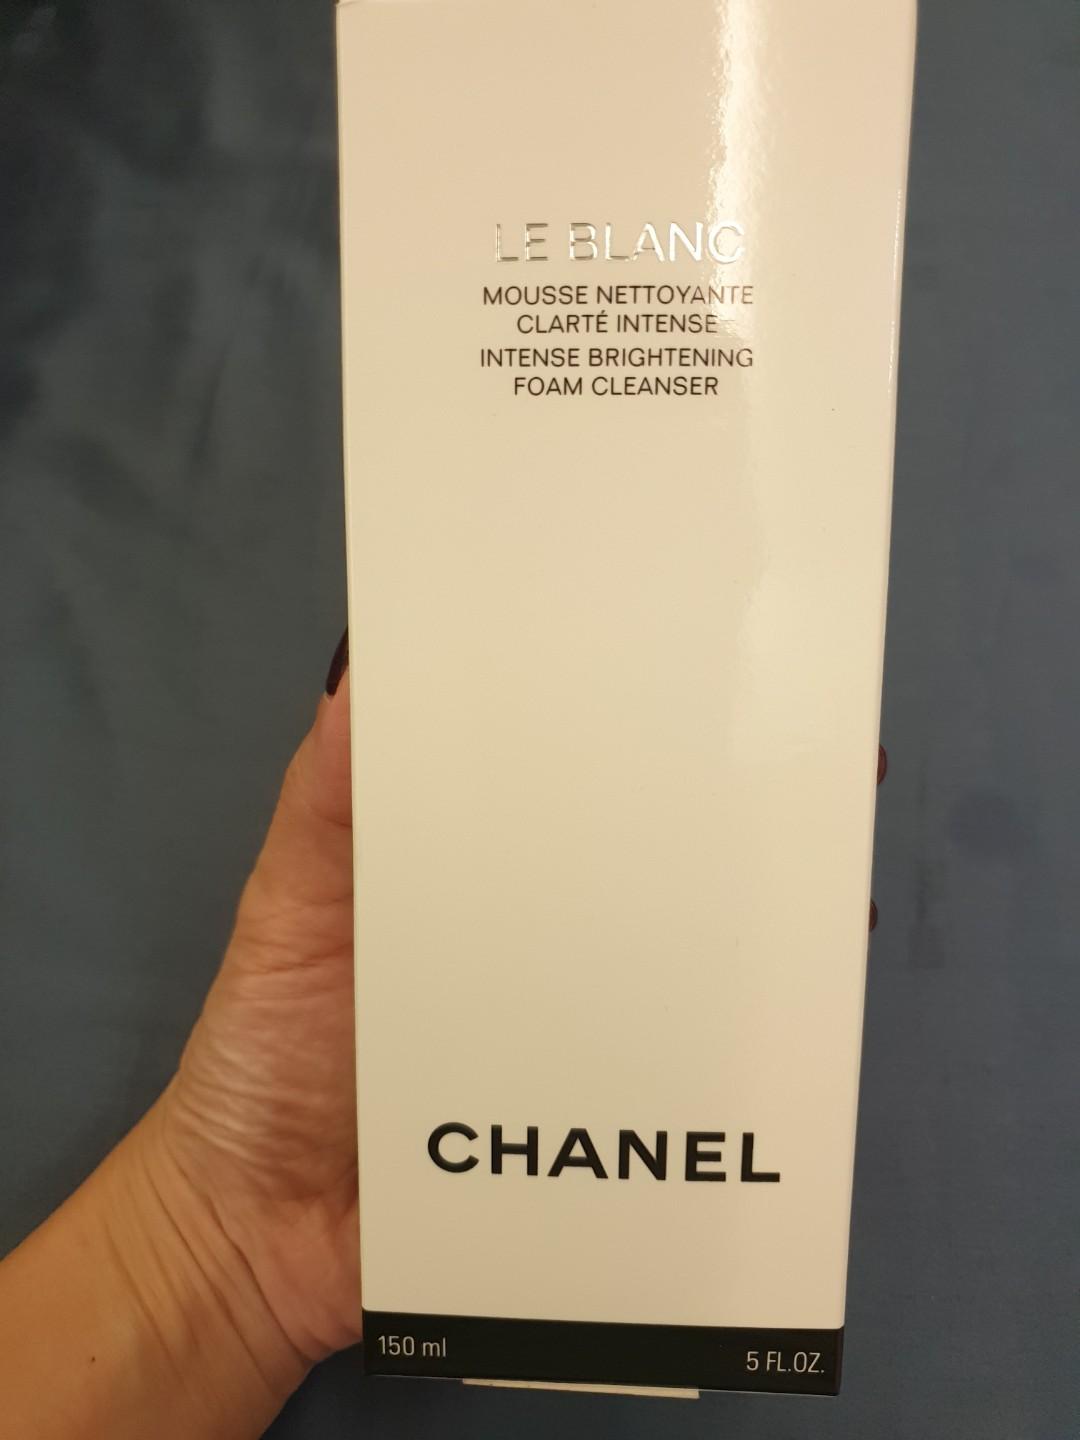 Chanel Le Blanc Intense Brightening Foam Cleanser, Beauty